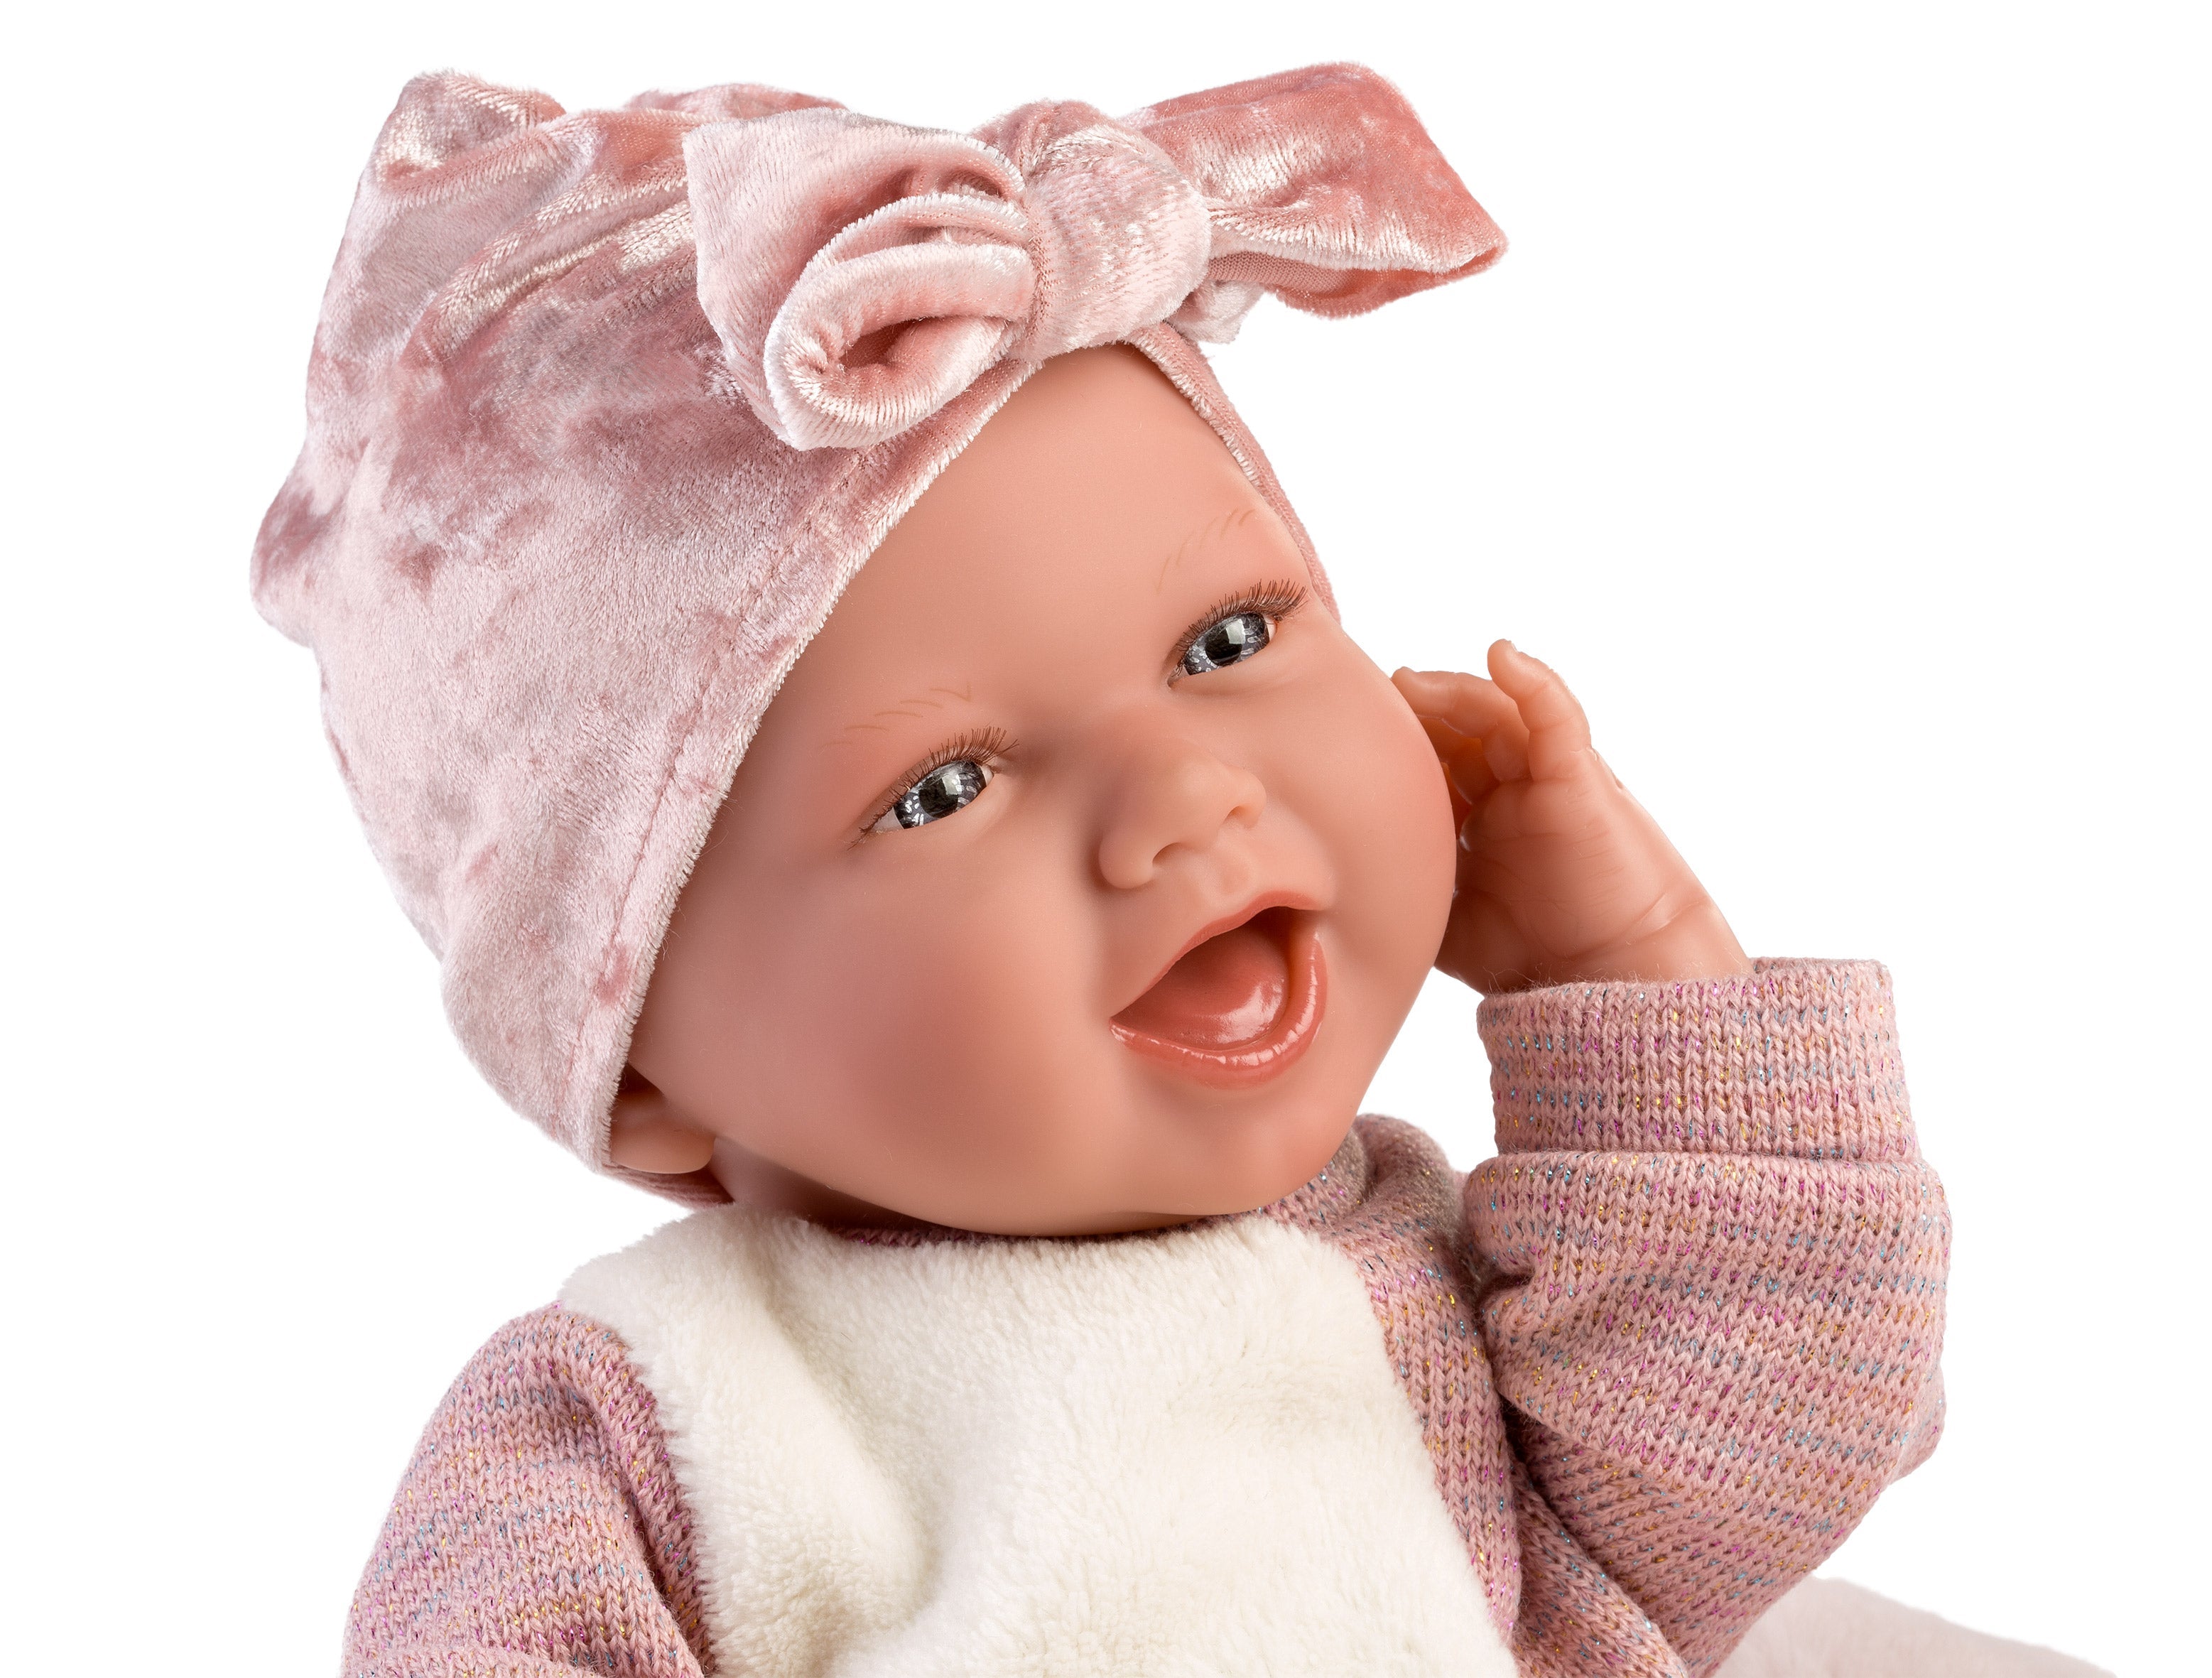 Llorens 16.5" Soft Body Crying Newborn Doll Estella with Blanket Dolls